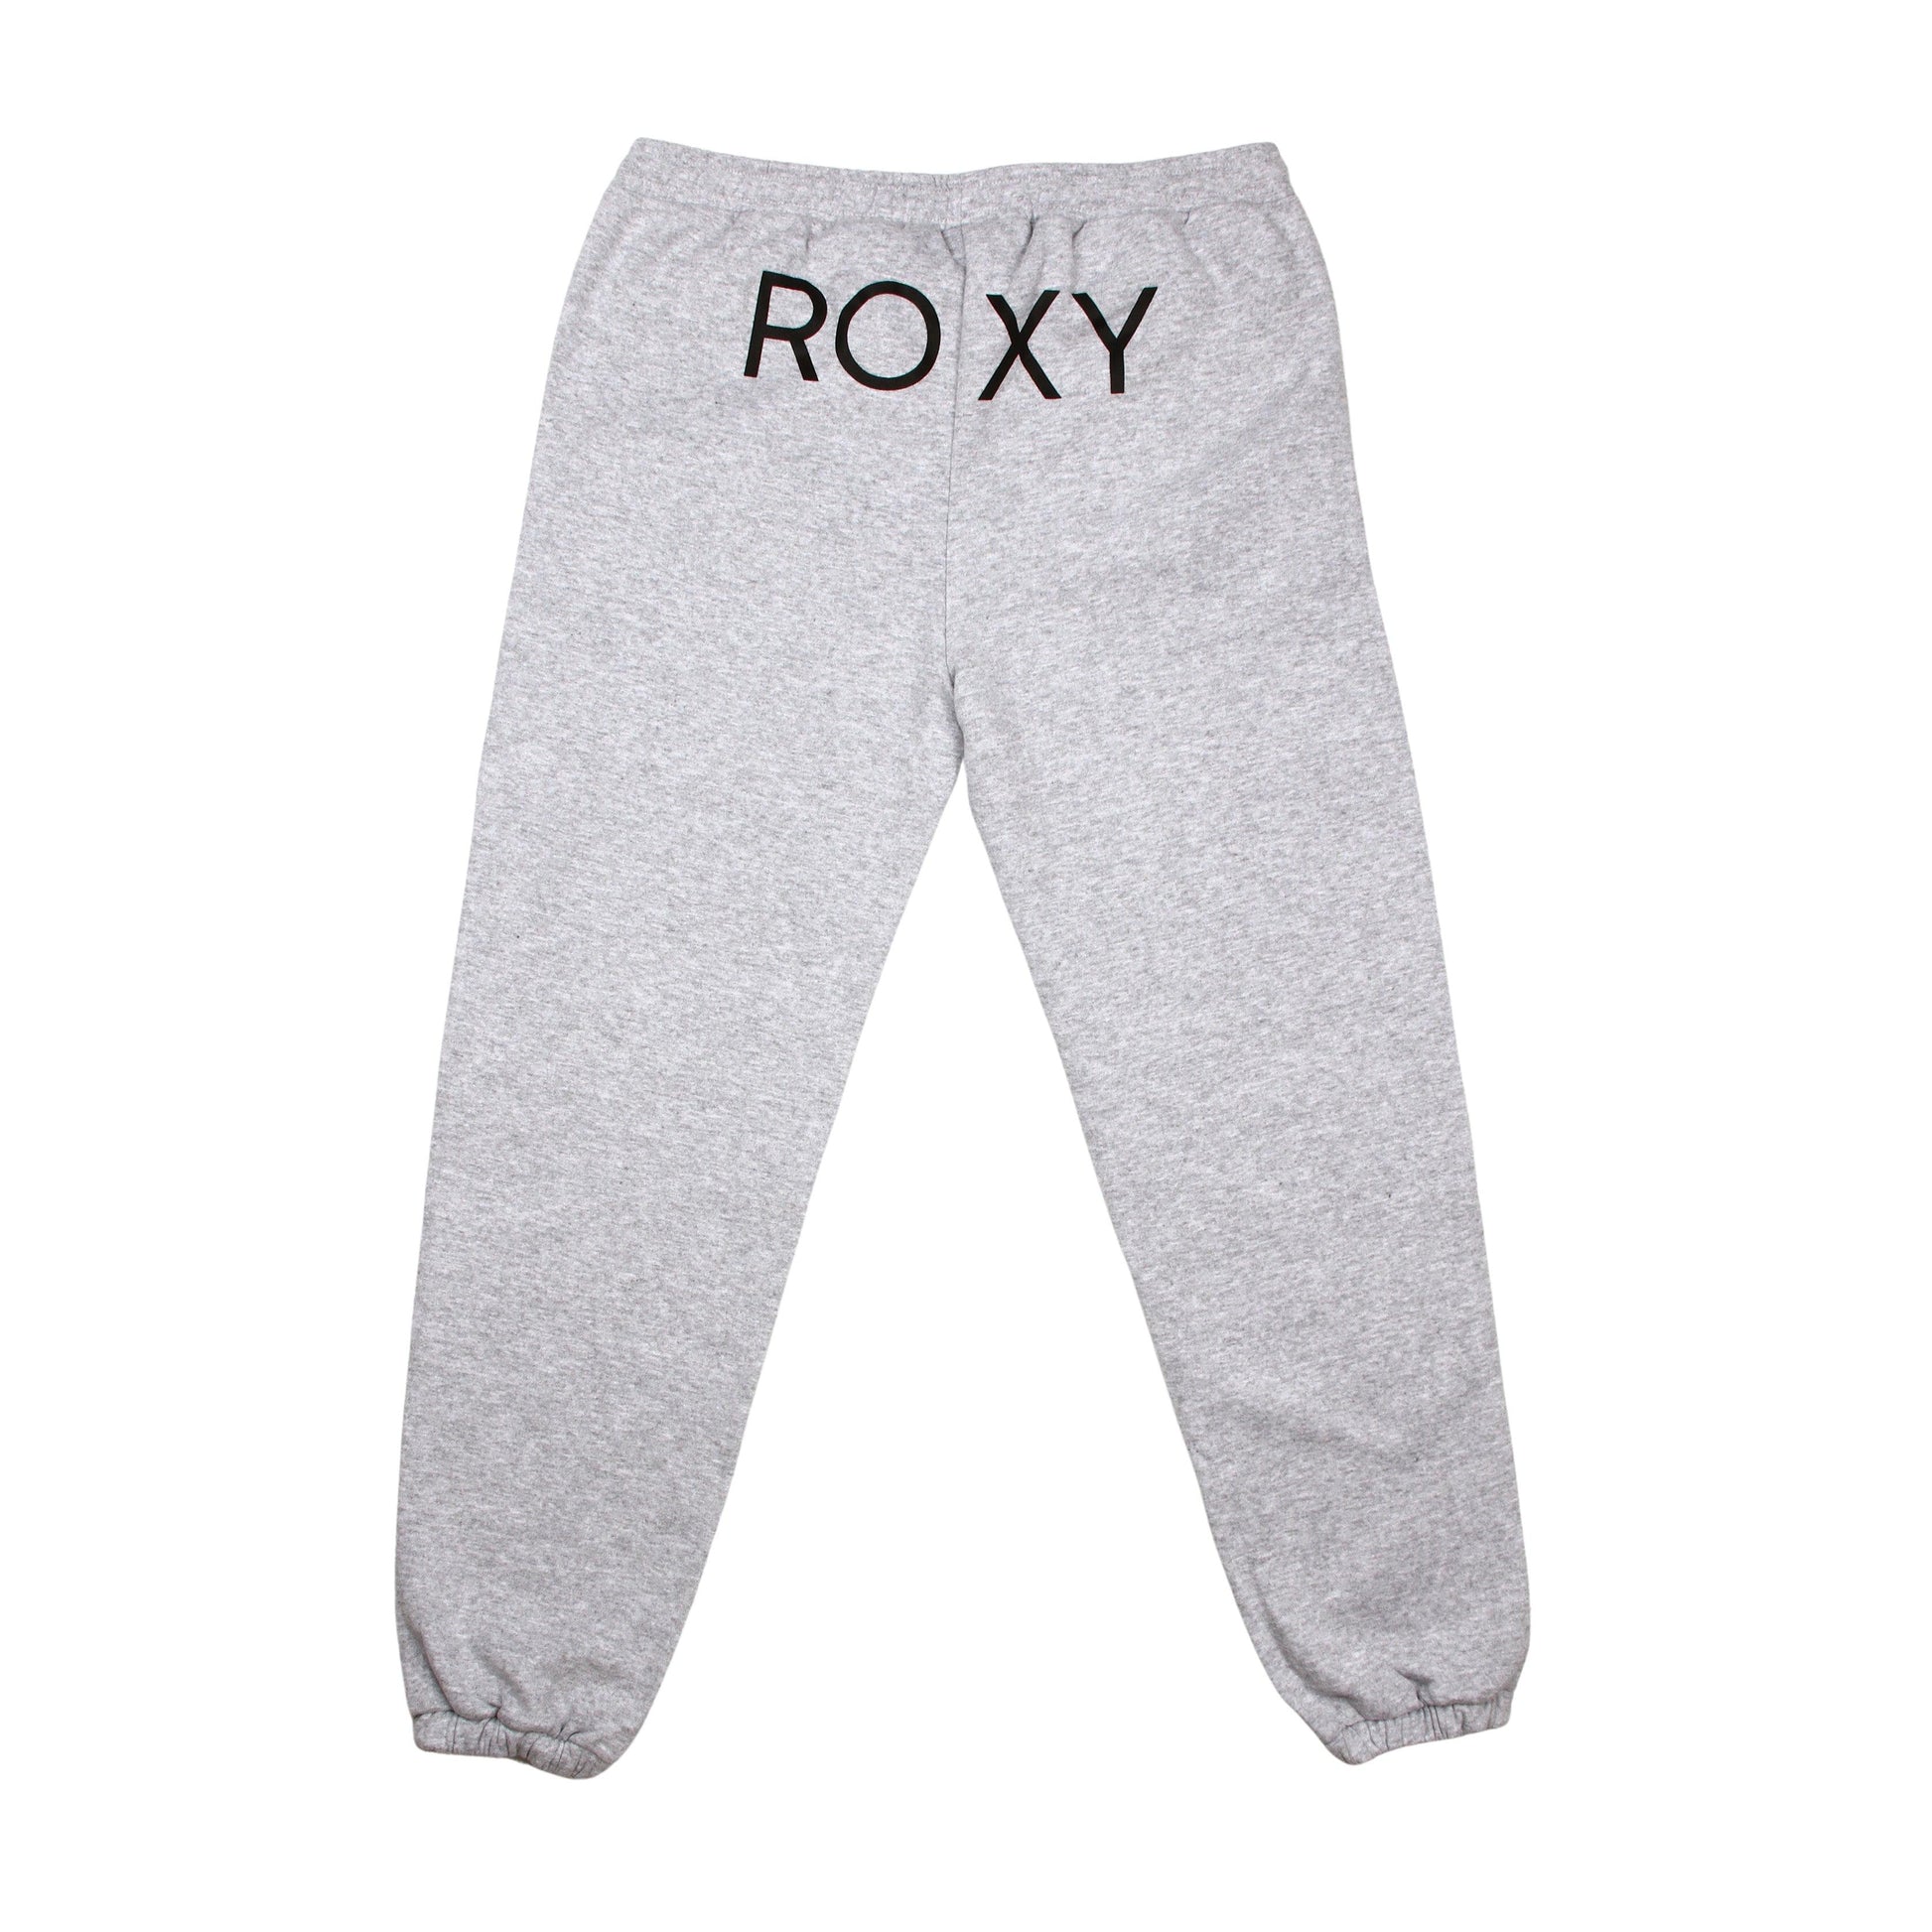 Pantalon Buzo Roxy Logo Gris - Indy